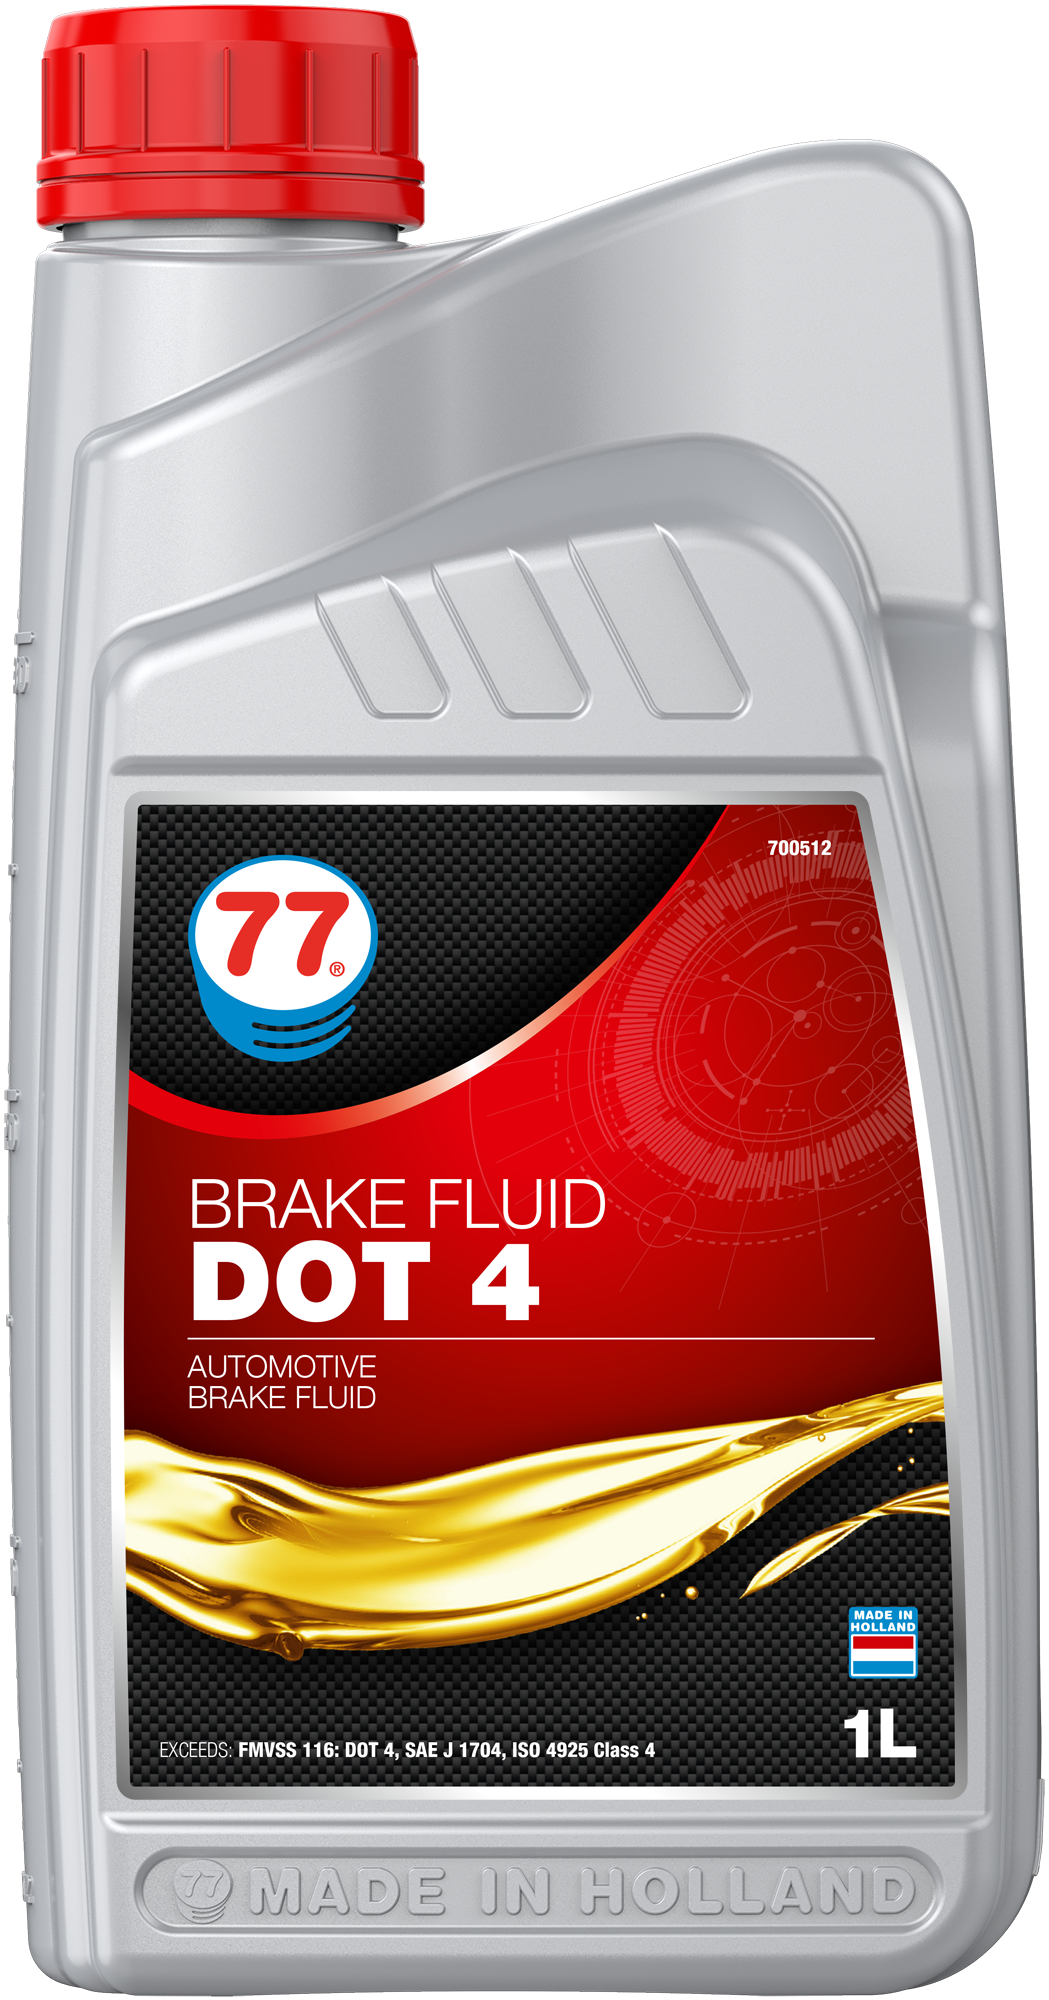 4392-1 Brake Fluid Dot 4 van 77 lubricants is een zeer krachtige remvloeistof speciaal ontworpen voor gebruik in disc, trommel en Anti Brake Systems (ABS) van alle bedrijfsvoertuigen, personenauto's en motorfietsen die werken onder matige tot ernstige omstandigheden, waar een DOT 4 vloeistof wordt voorgeschreven.